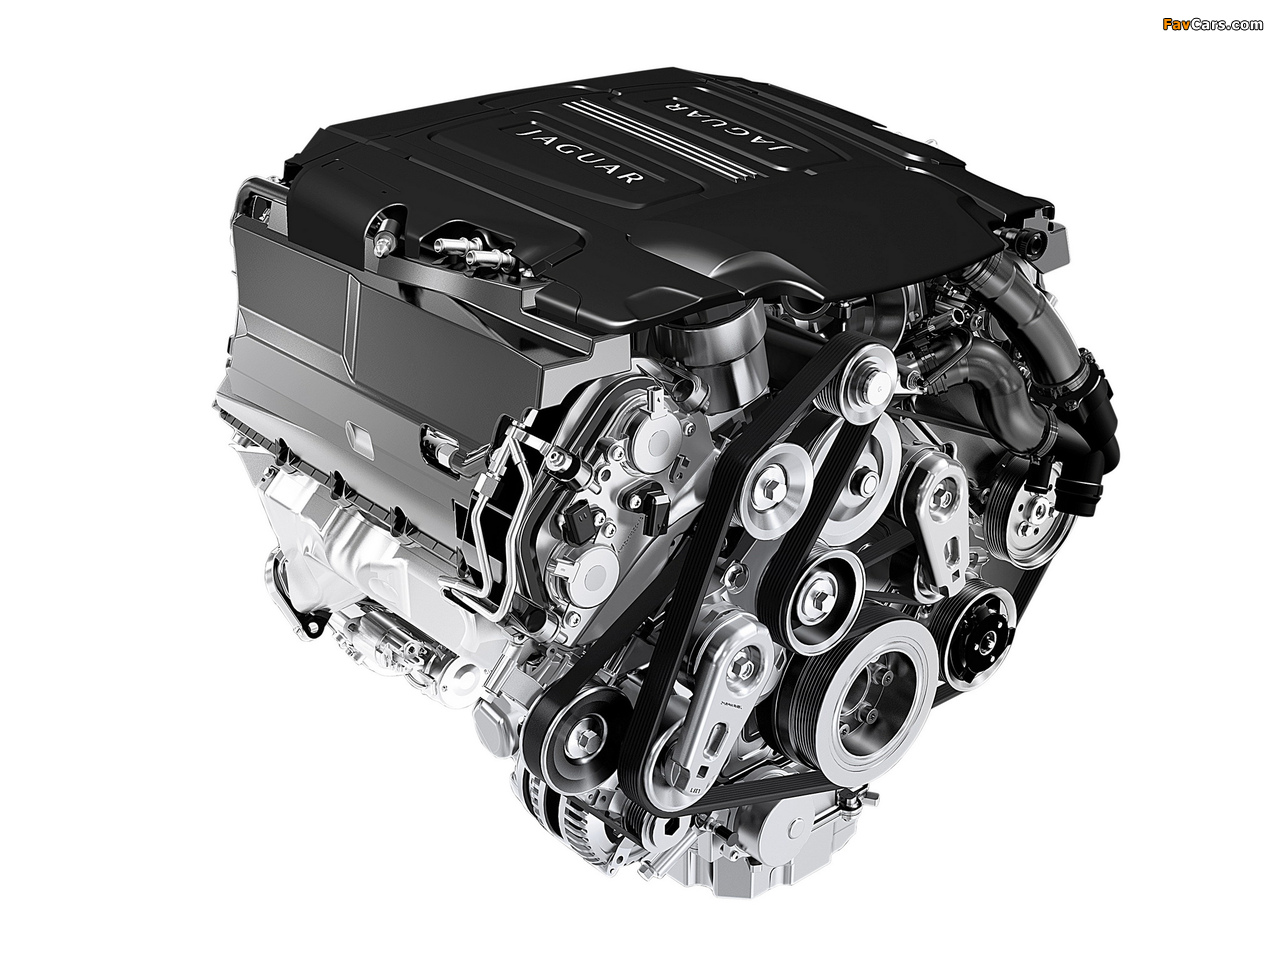 Images of Engines  Jaguar 5.0L V8 Supercharged (495 hp) (1280 x 960)